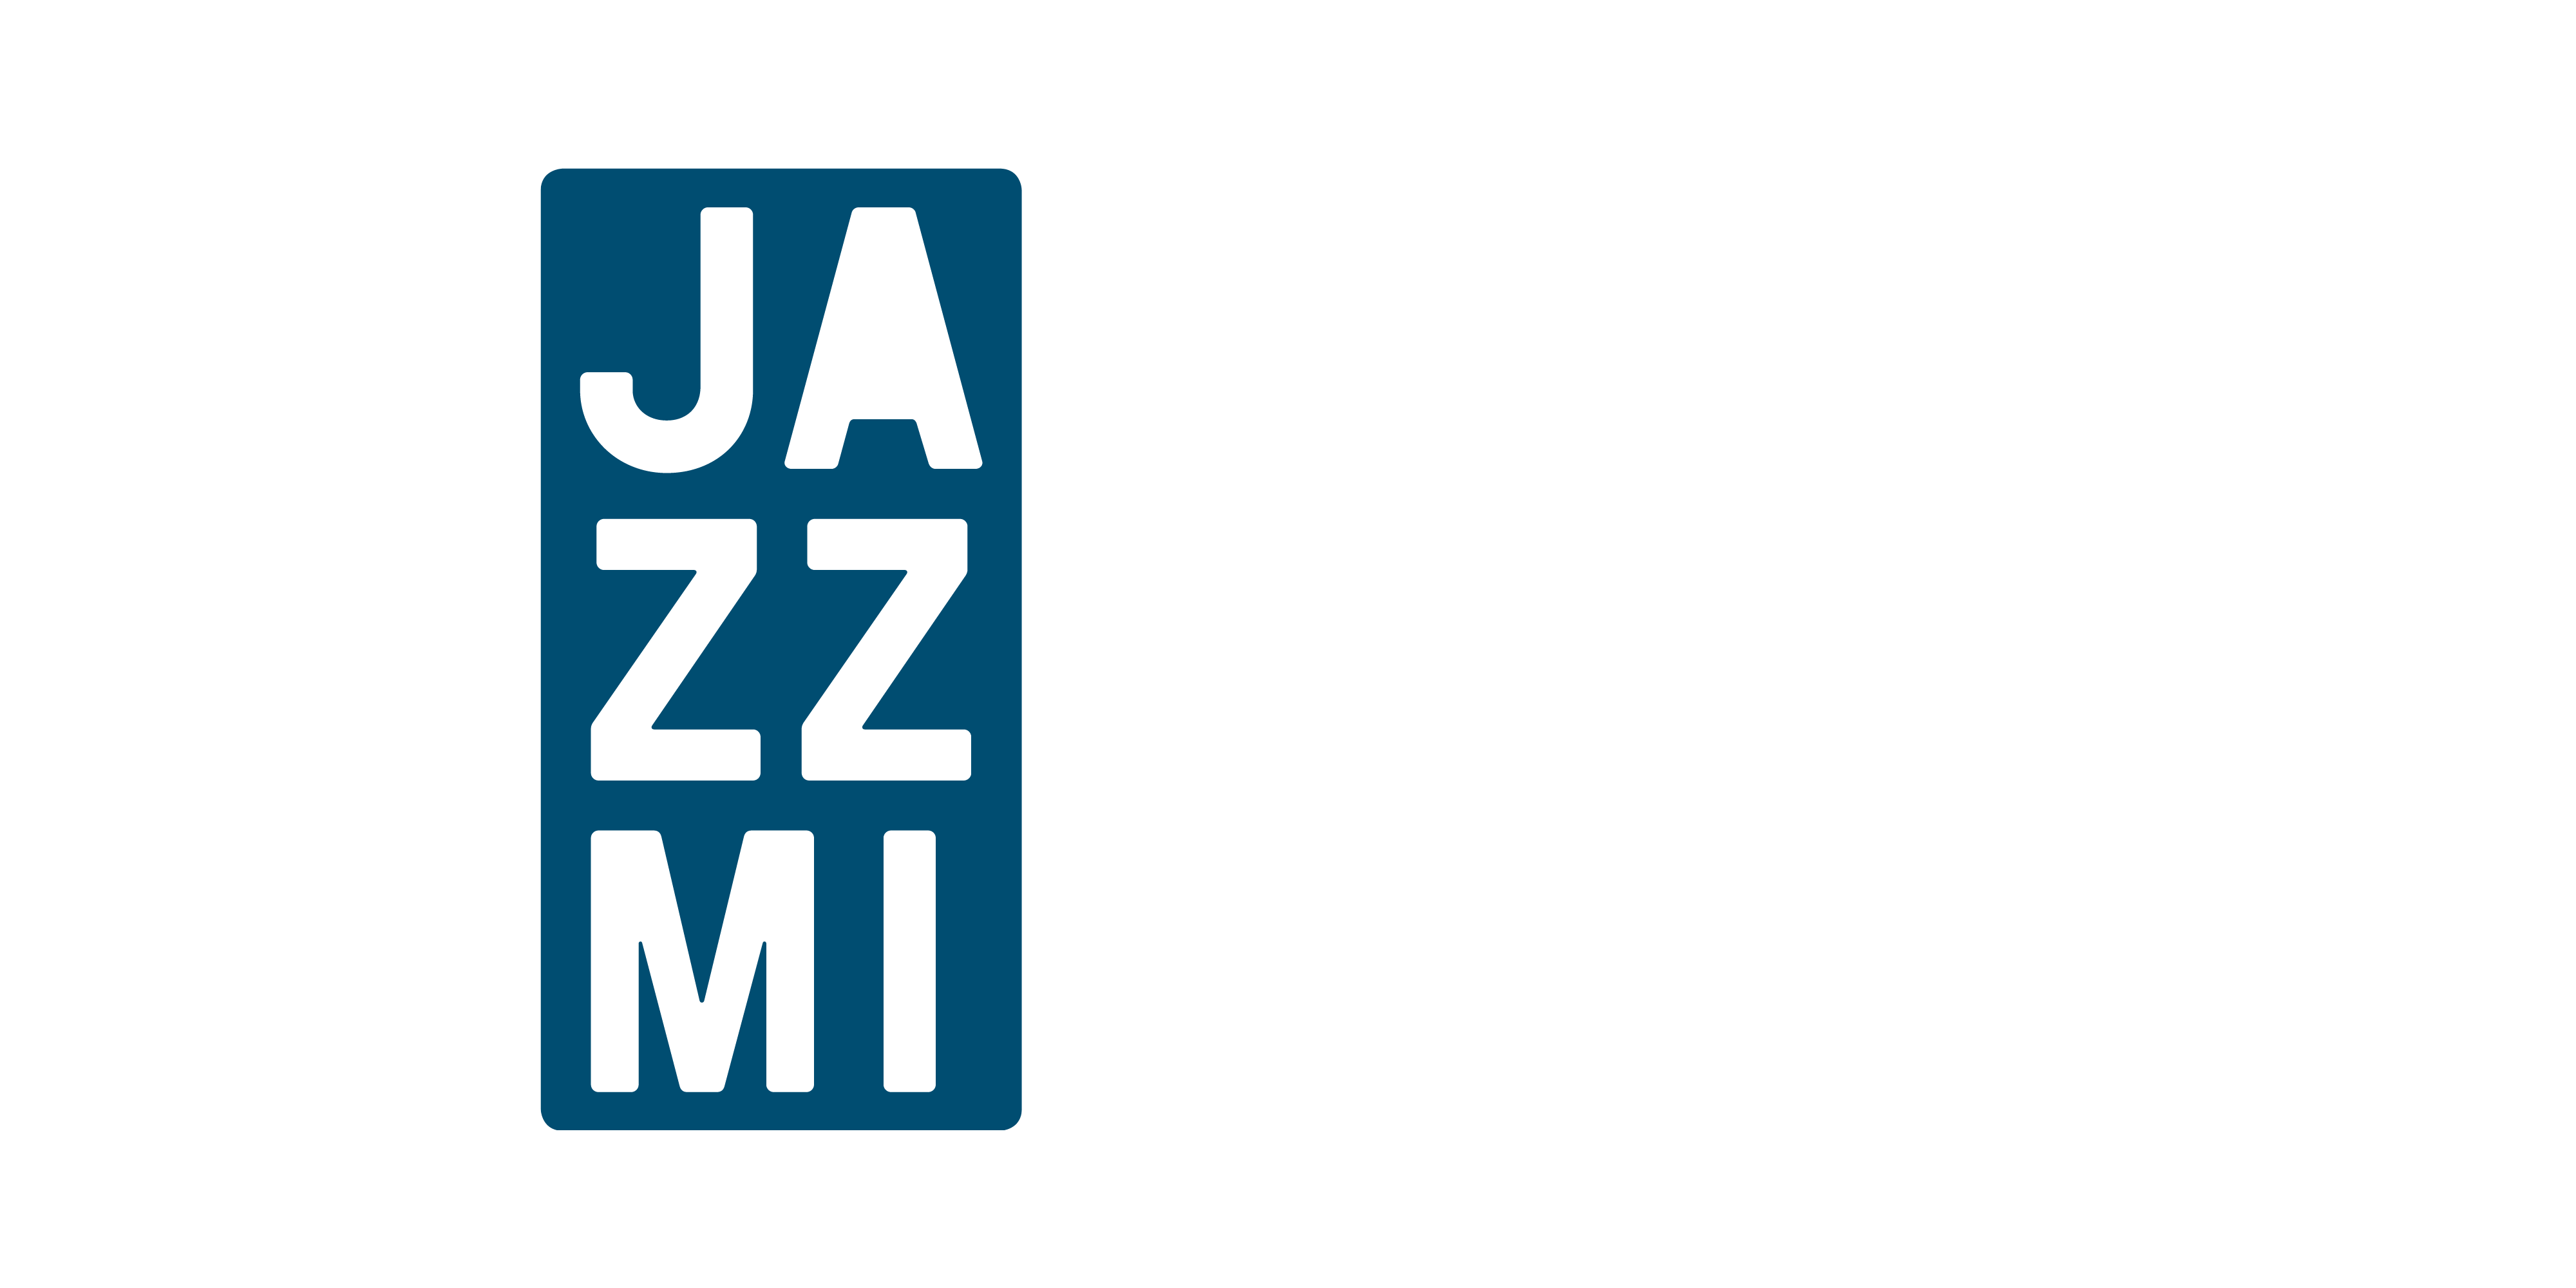  Paolo Fresu at MUBA